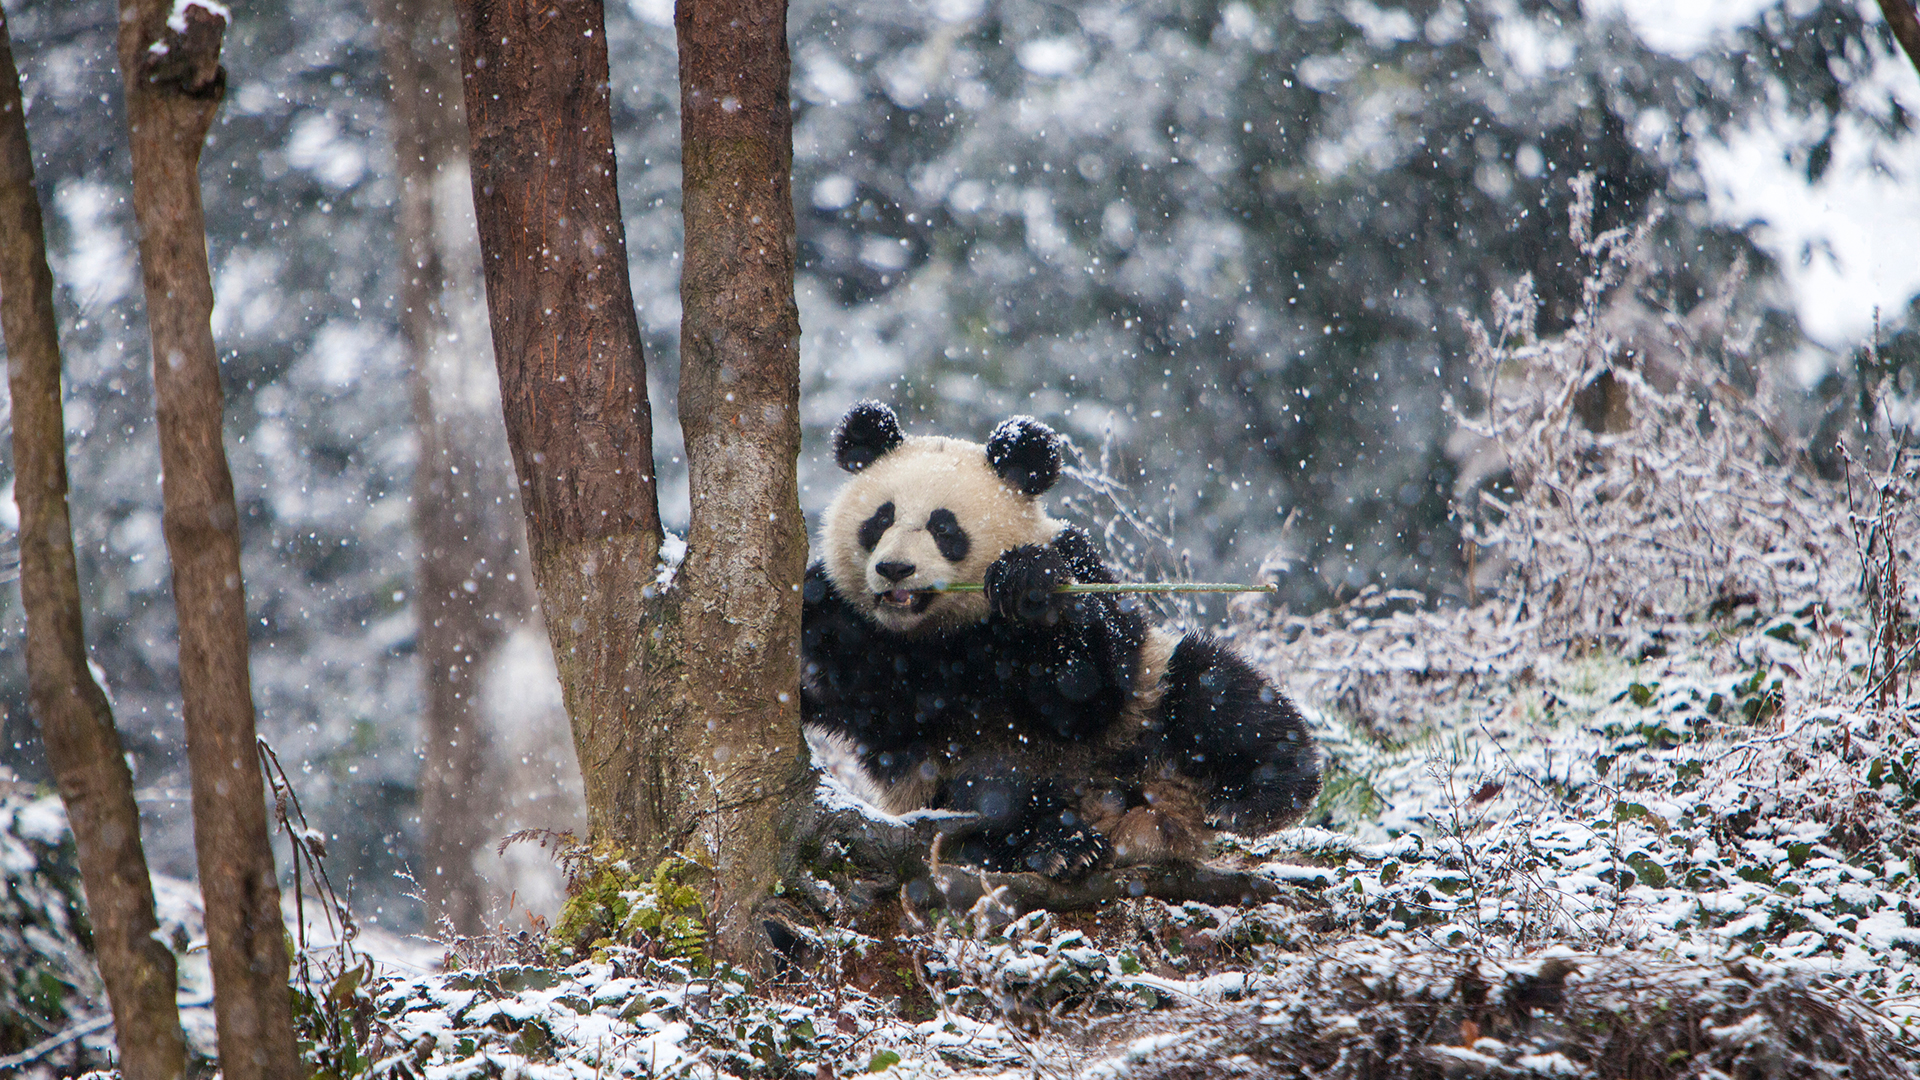 Giant panda at Chengdu Panda Base, China by Jim Zuckerman